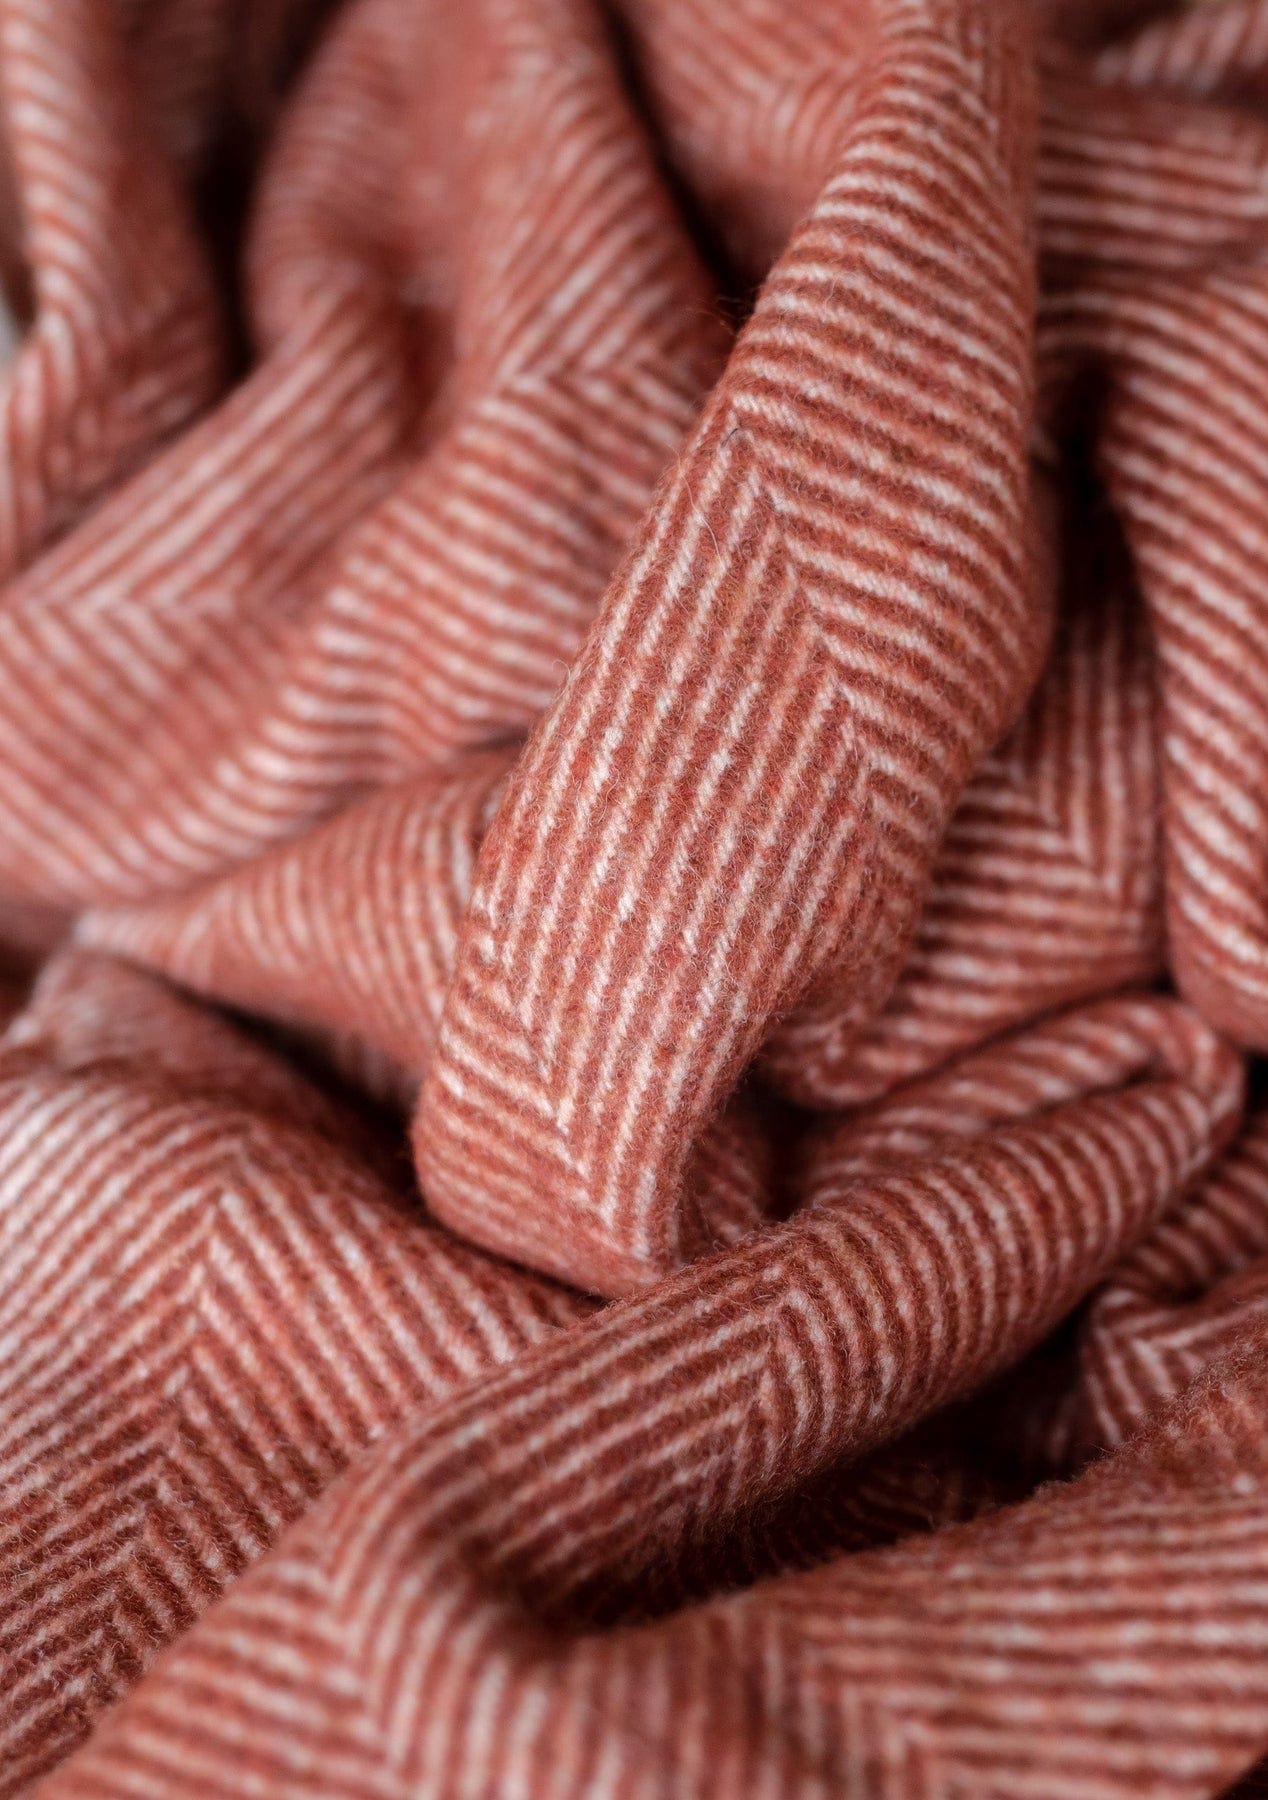 PRIOR SHOP Blankets Rust Herringbone Recycled Wool Blanket